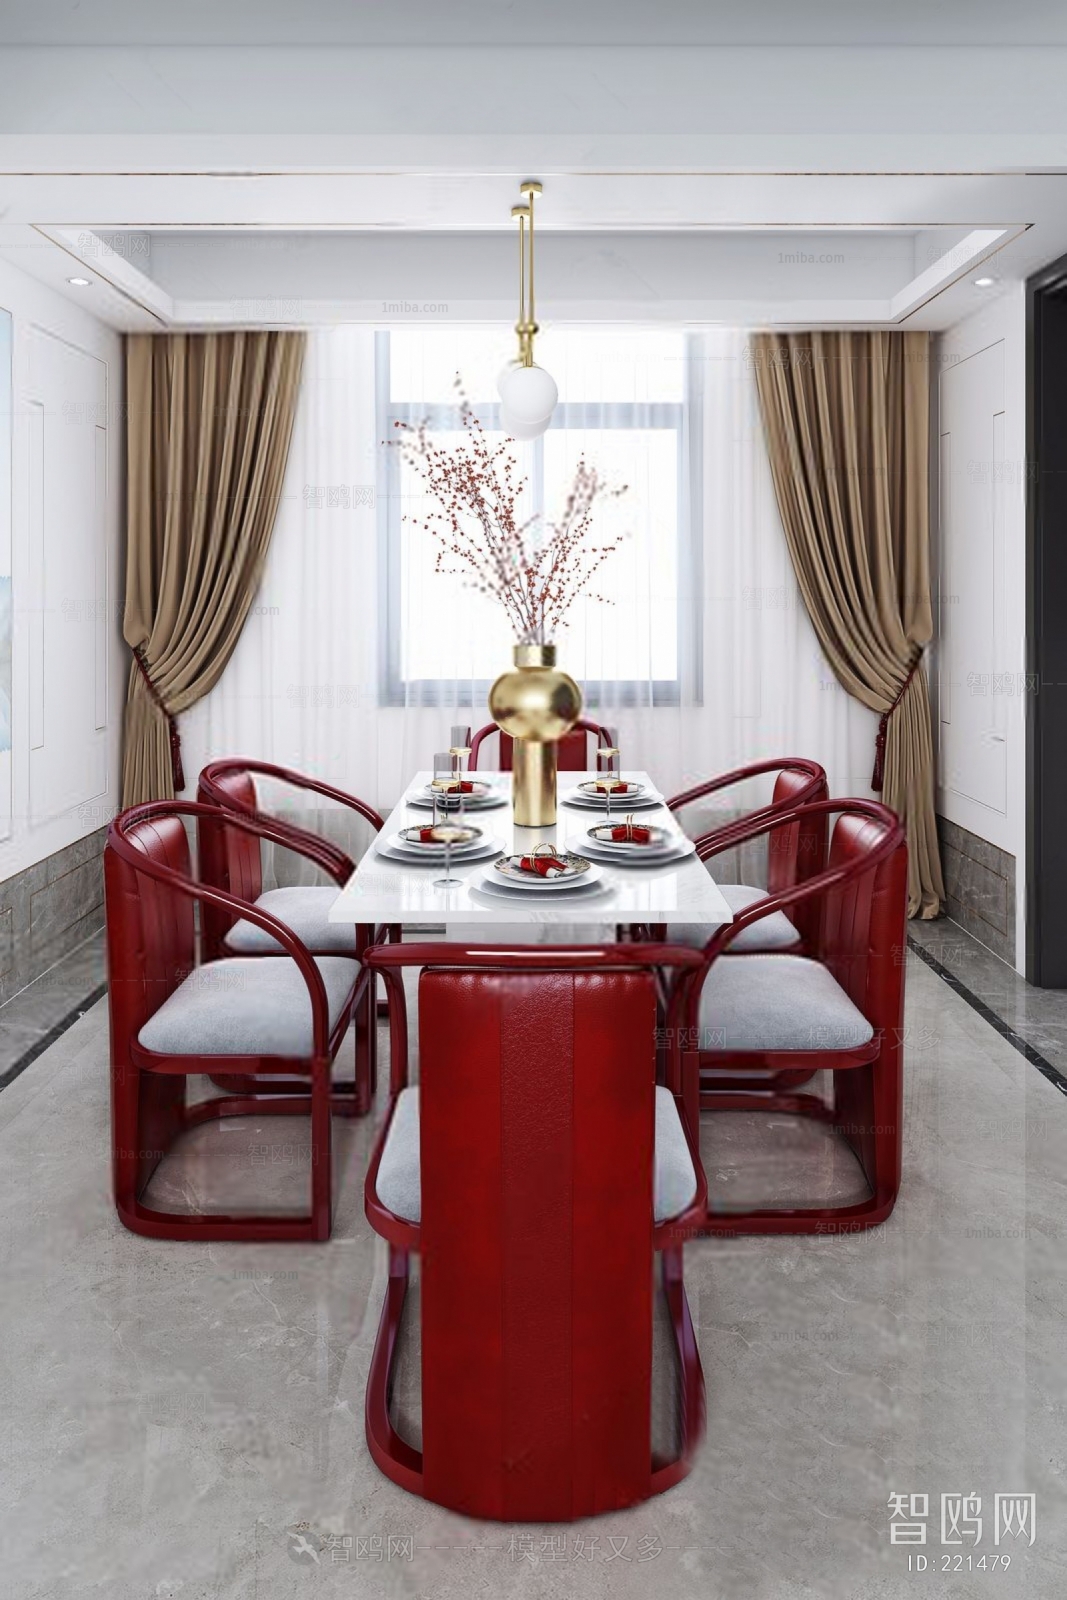 中国红中式别墅样板间餐厅